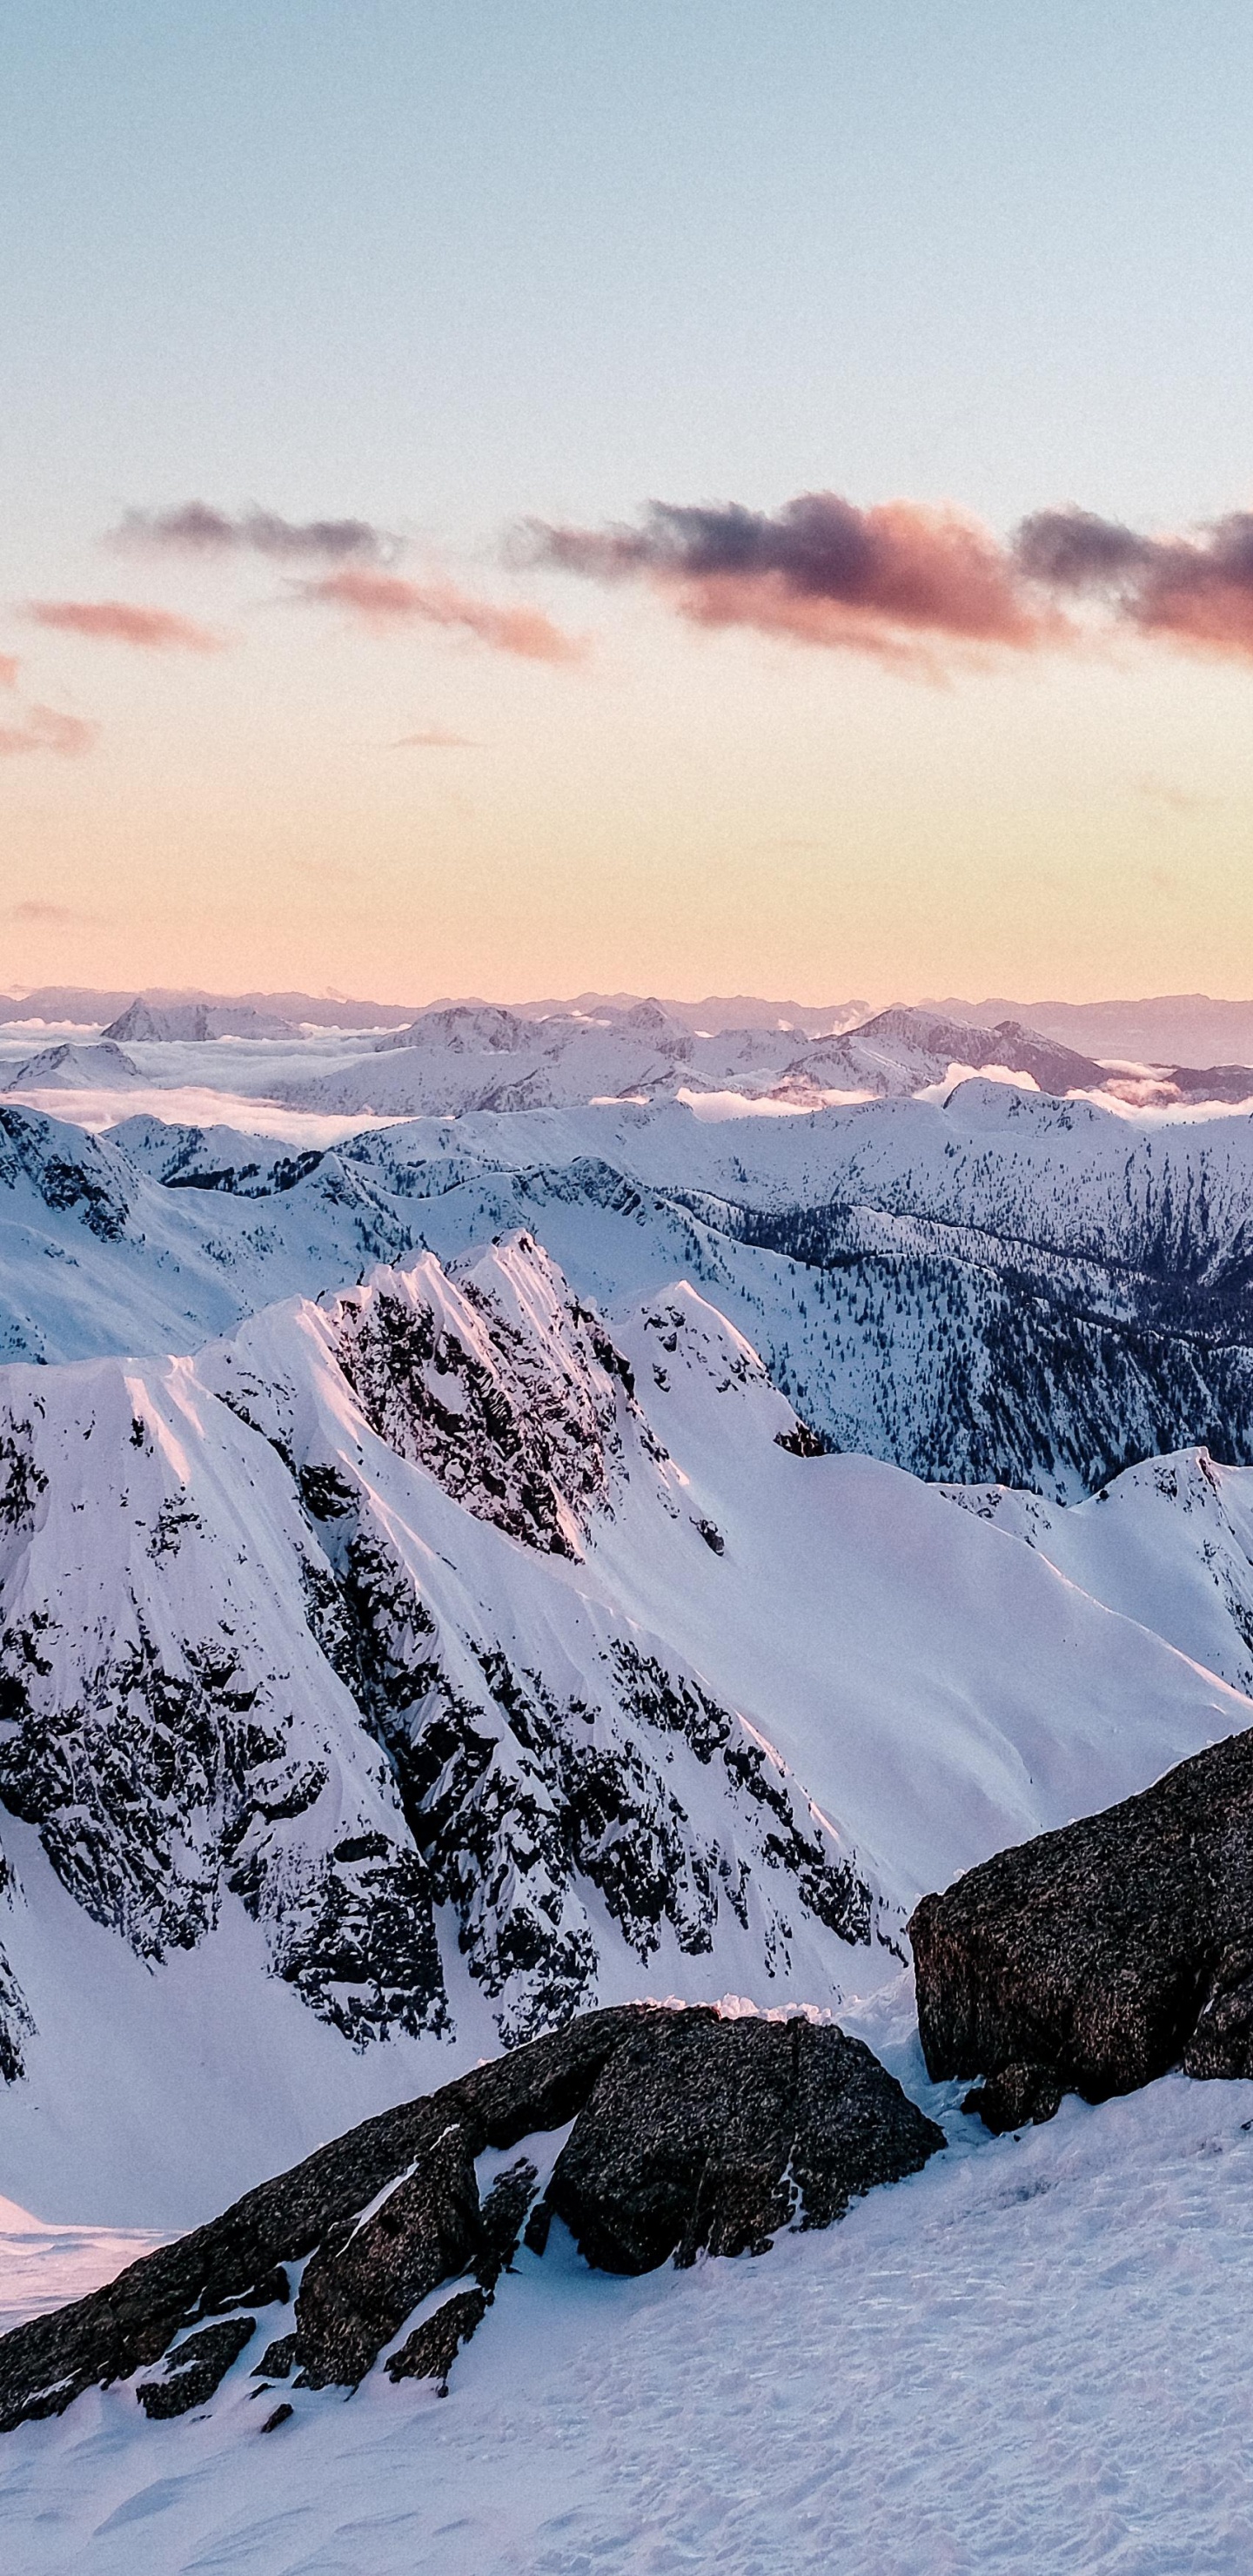 Las Formaciones Montañosas, Montaña, Nieve, Invierno, Naturaleza. Wallpaper in 1440x2960 Resolution